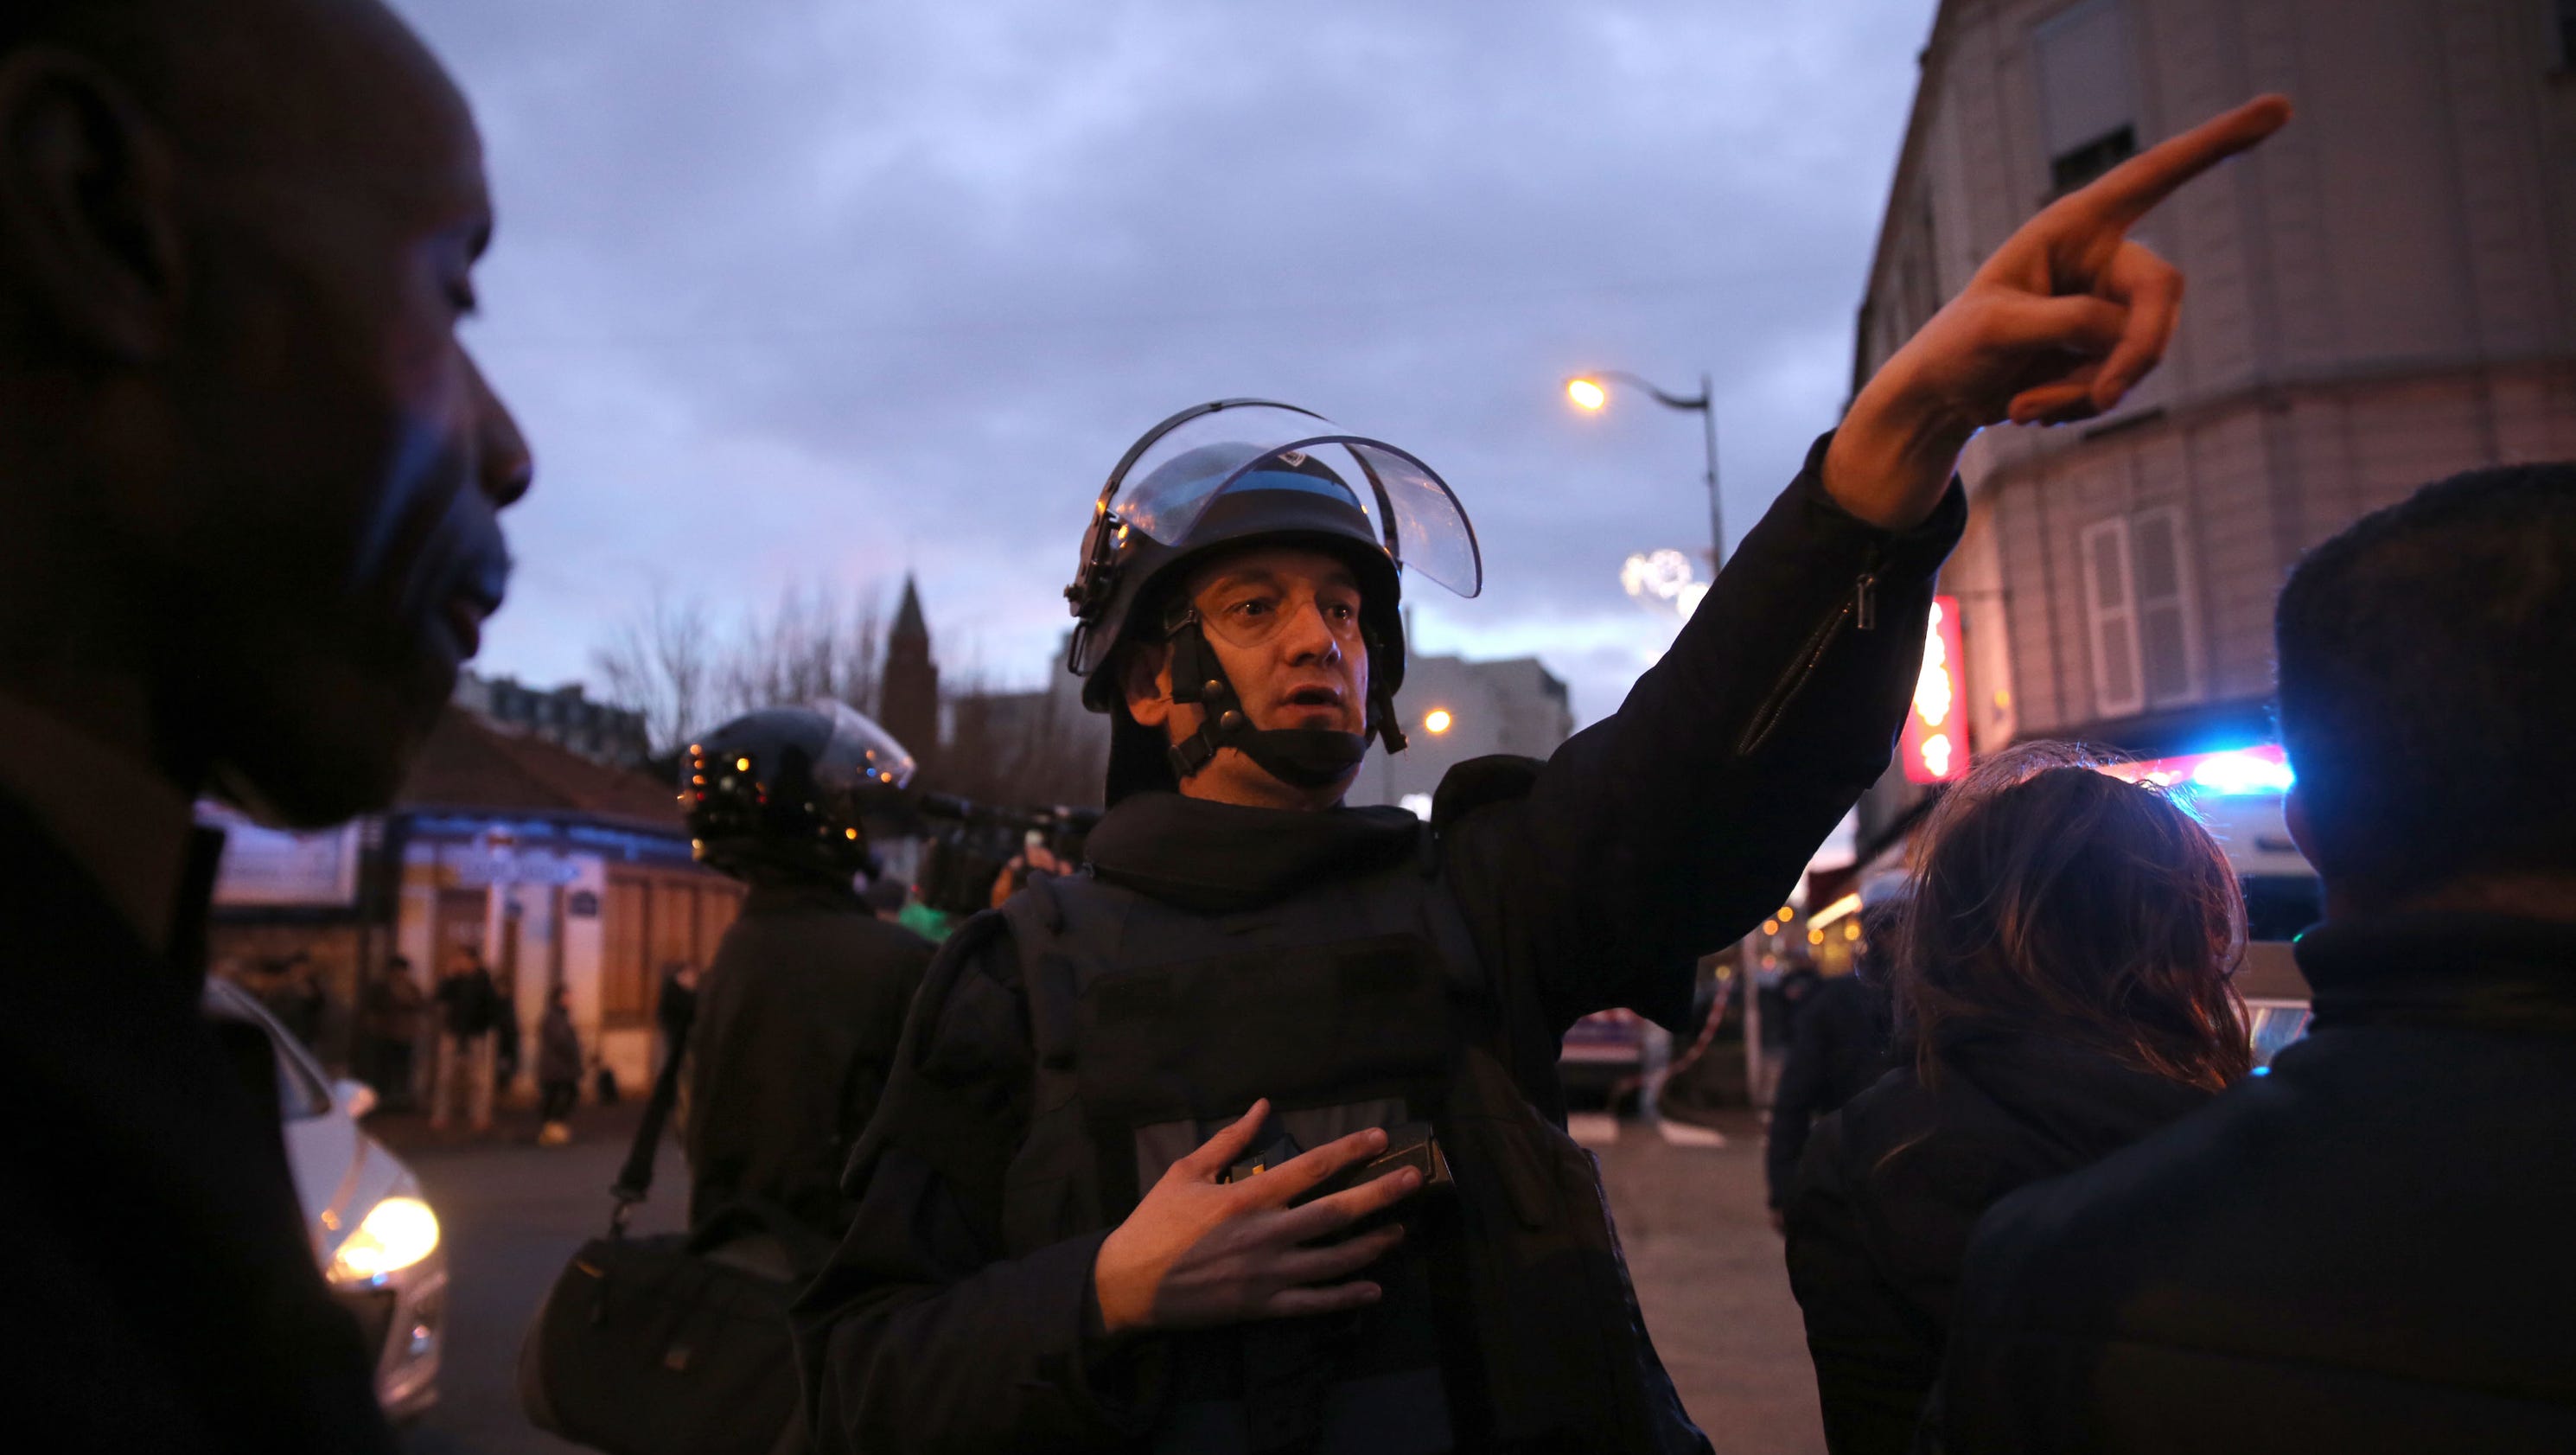 Paris Terror Attack What We Know